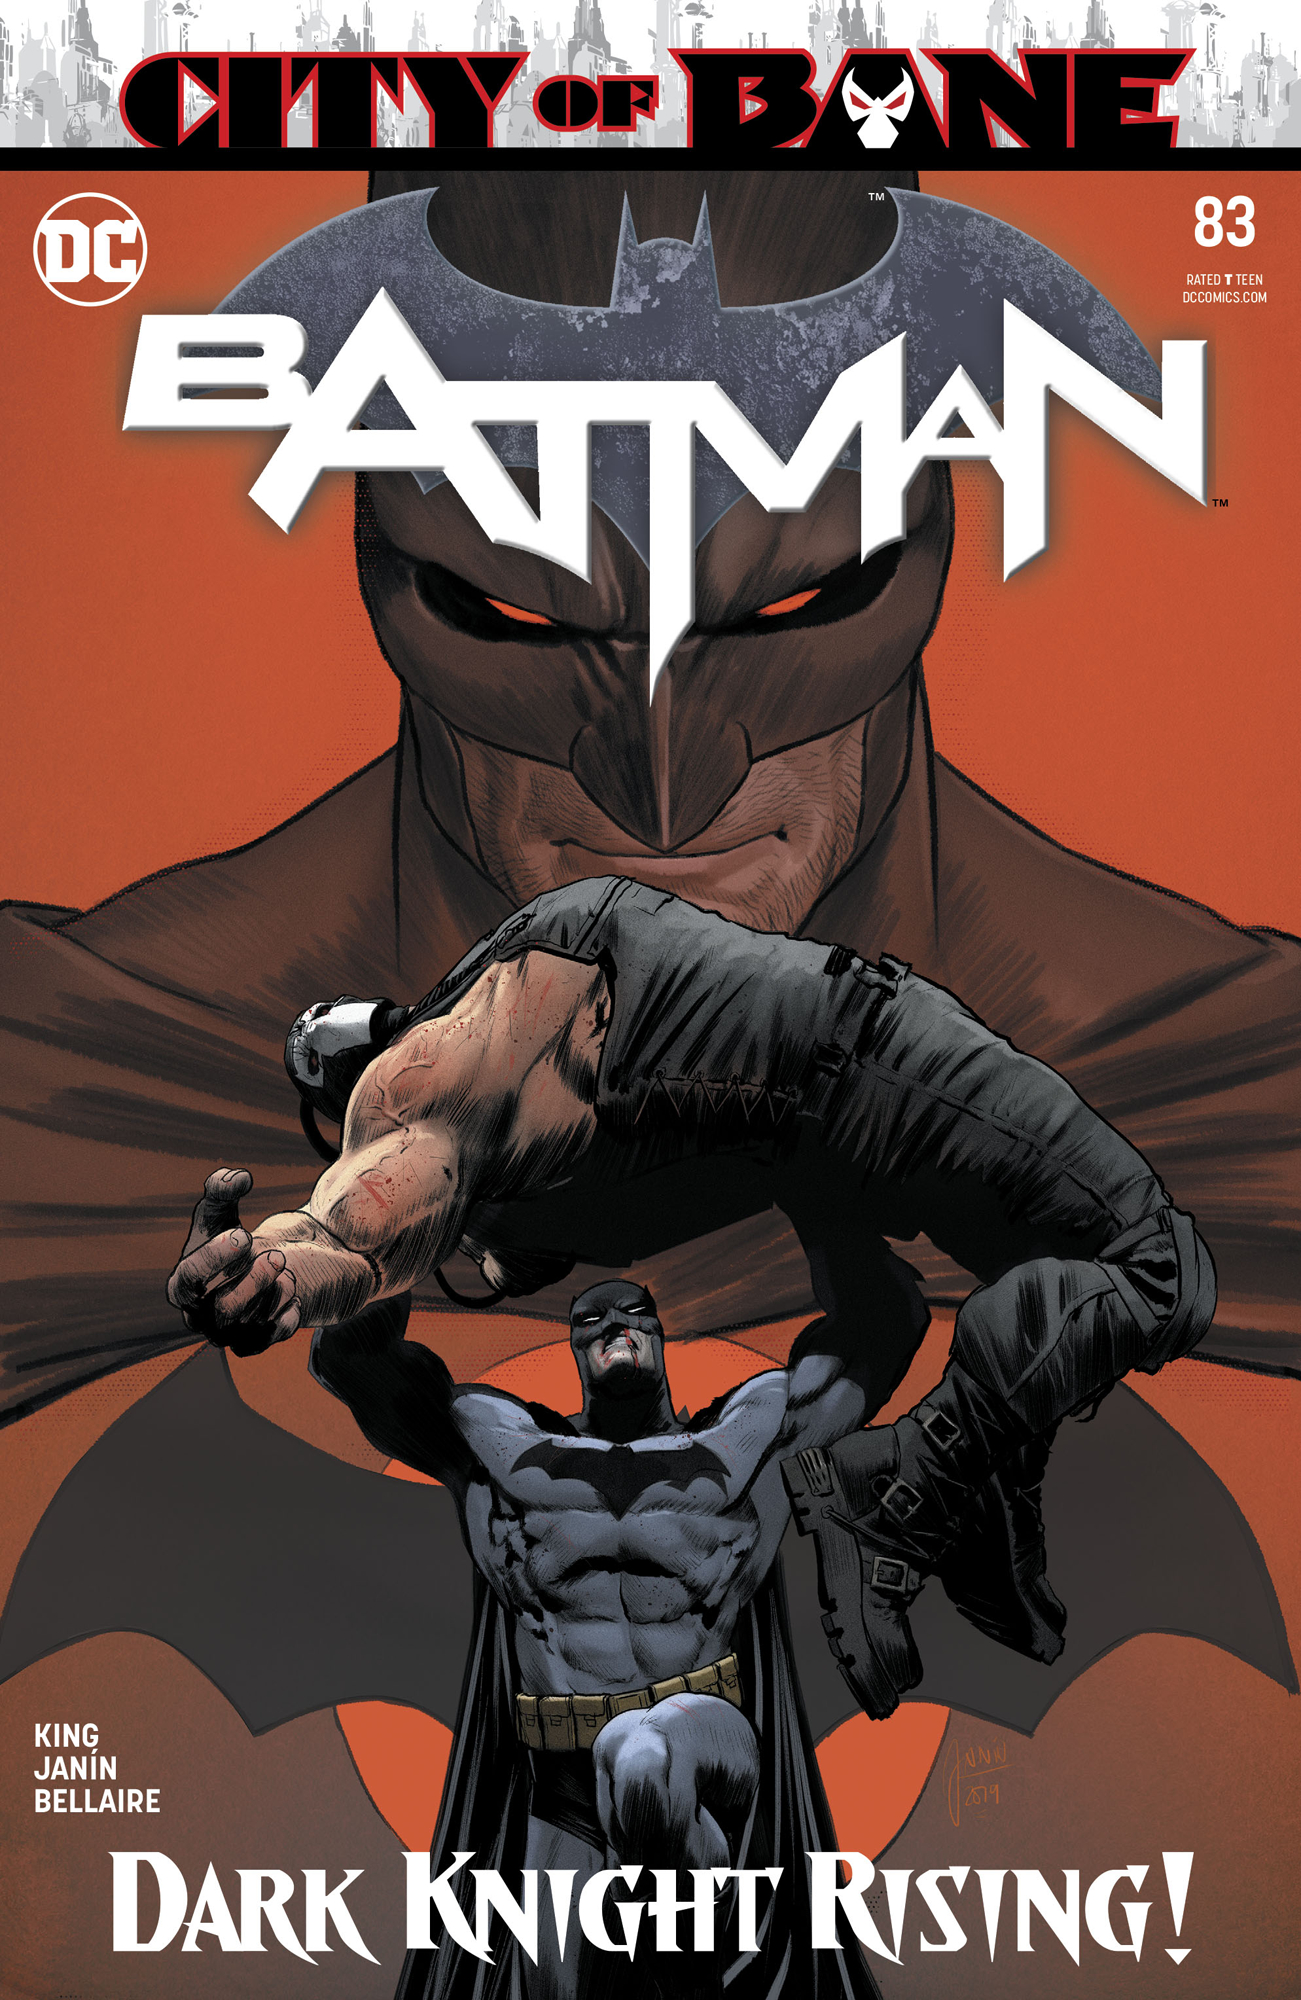 Batman #83 review: no good deaths